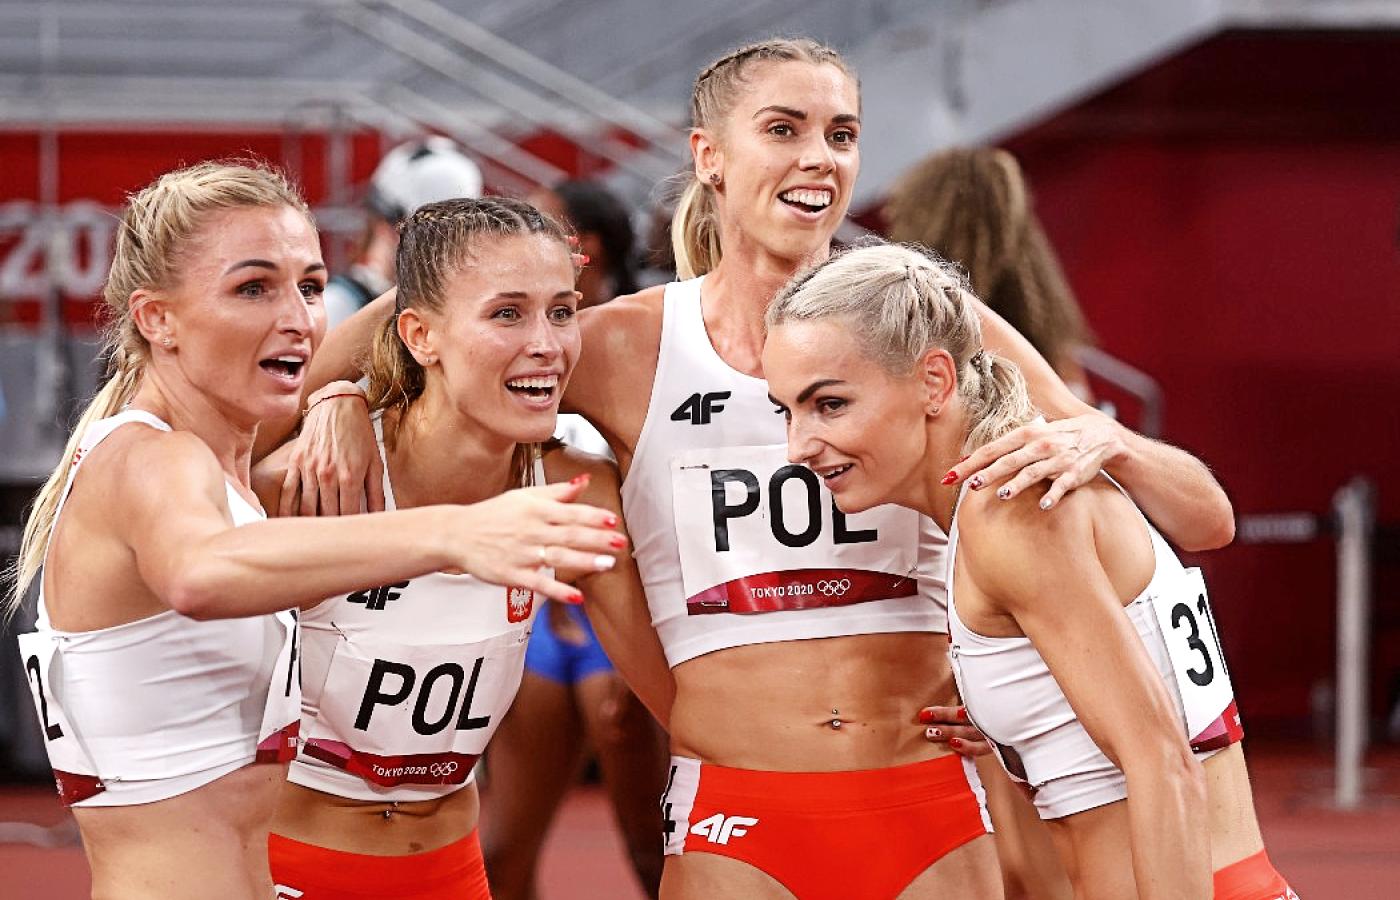 Polska sztafeta kobiet 4x400 m zdobyła w Tokio srebro.